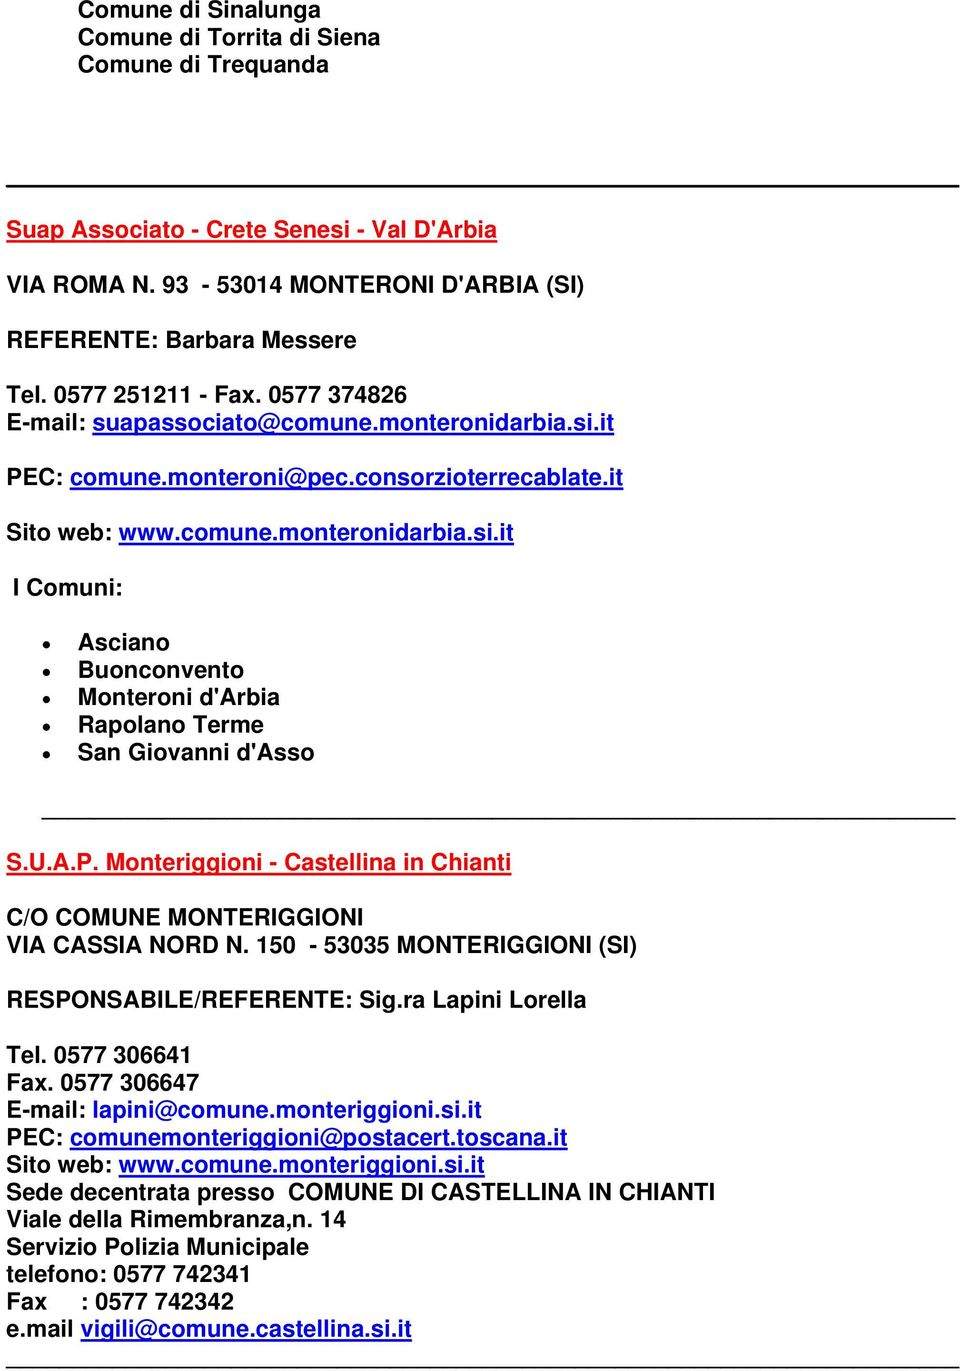 U.A.P. Monteriggioni - Castellina in Chianti C/O COMUNE MONTERIGGIONI VIA CASSIA NORD N. 150-53035 MONTERIGGIONI (SI) RESPONSABILE/REFERENTE: Sig.ra Lapini Lorella Tel. 0577 306641 Fax.